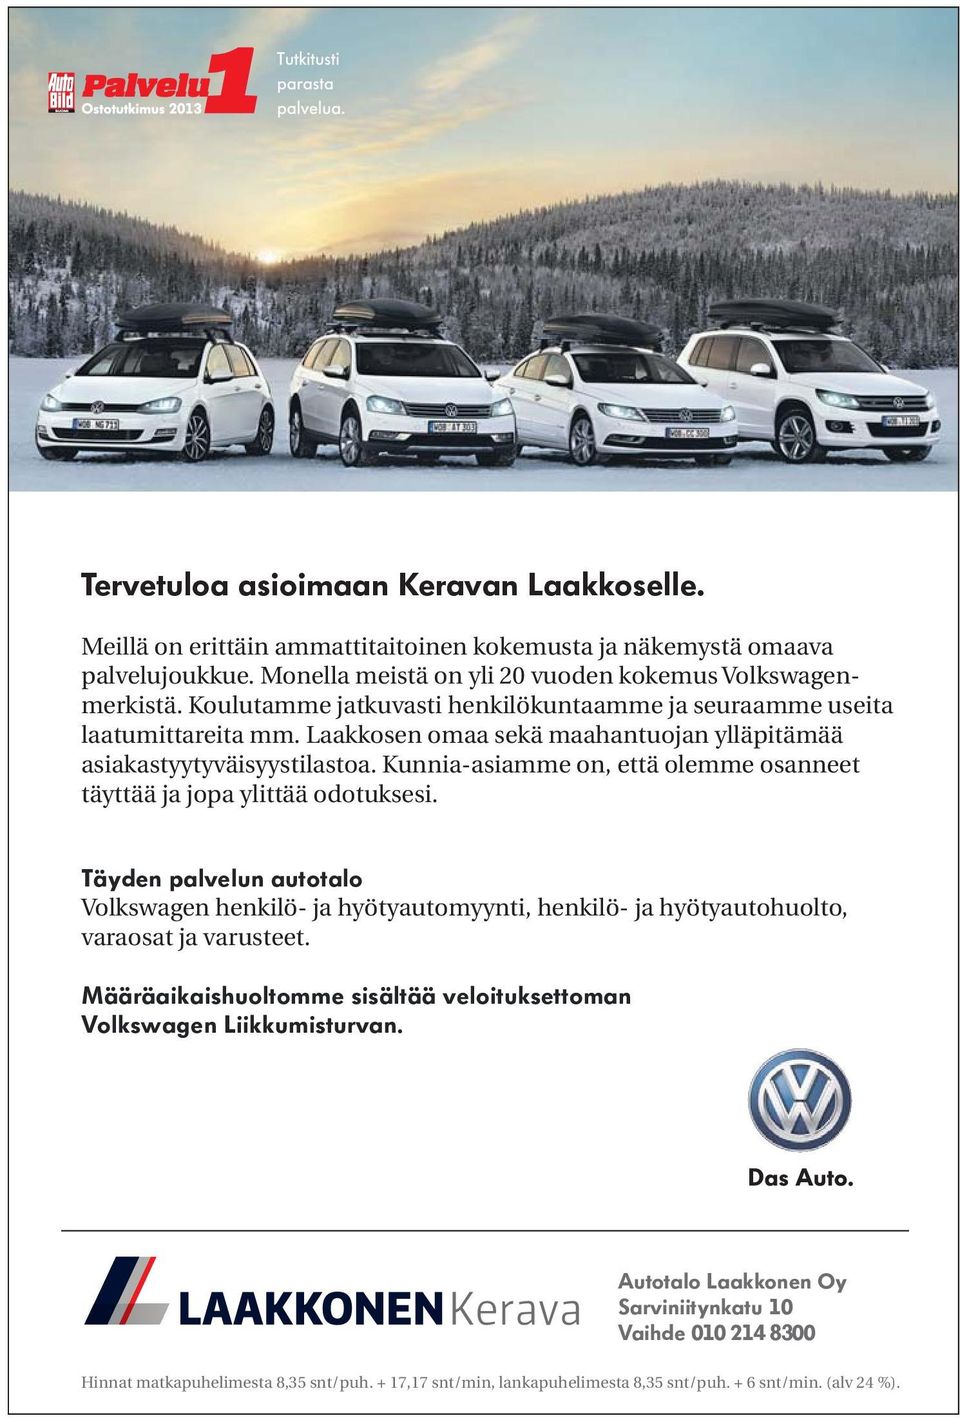 Kunnia-asiamme on, että olemme osanneet täyttää ja jopa ylittää odotuksesi. Täyden palvelun autotalo Volkswagen henkilö- ja hyötyautomyynti, henkilö- ja hyötyautohuolto, varaosat ja varusteet.